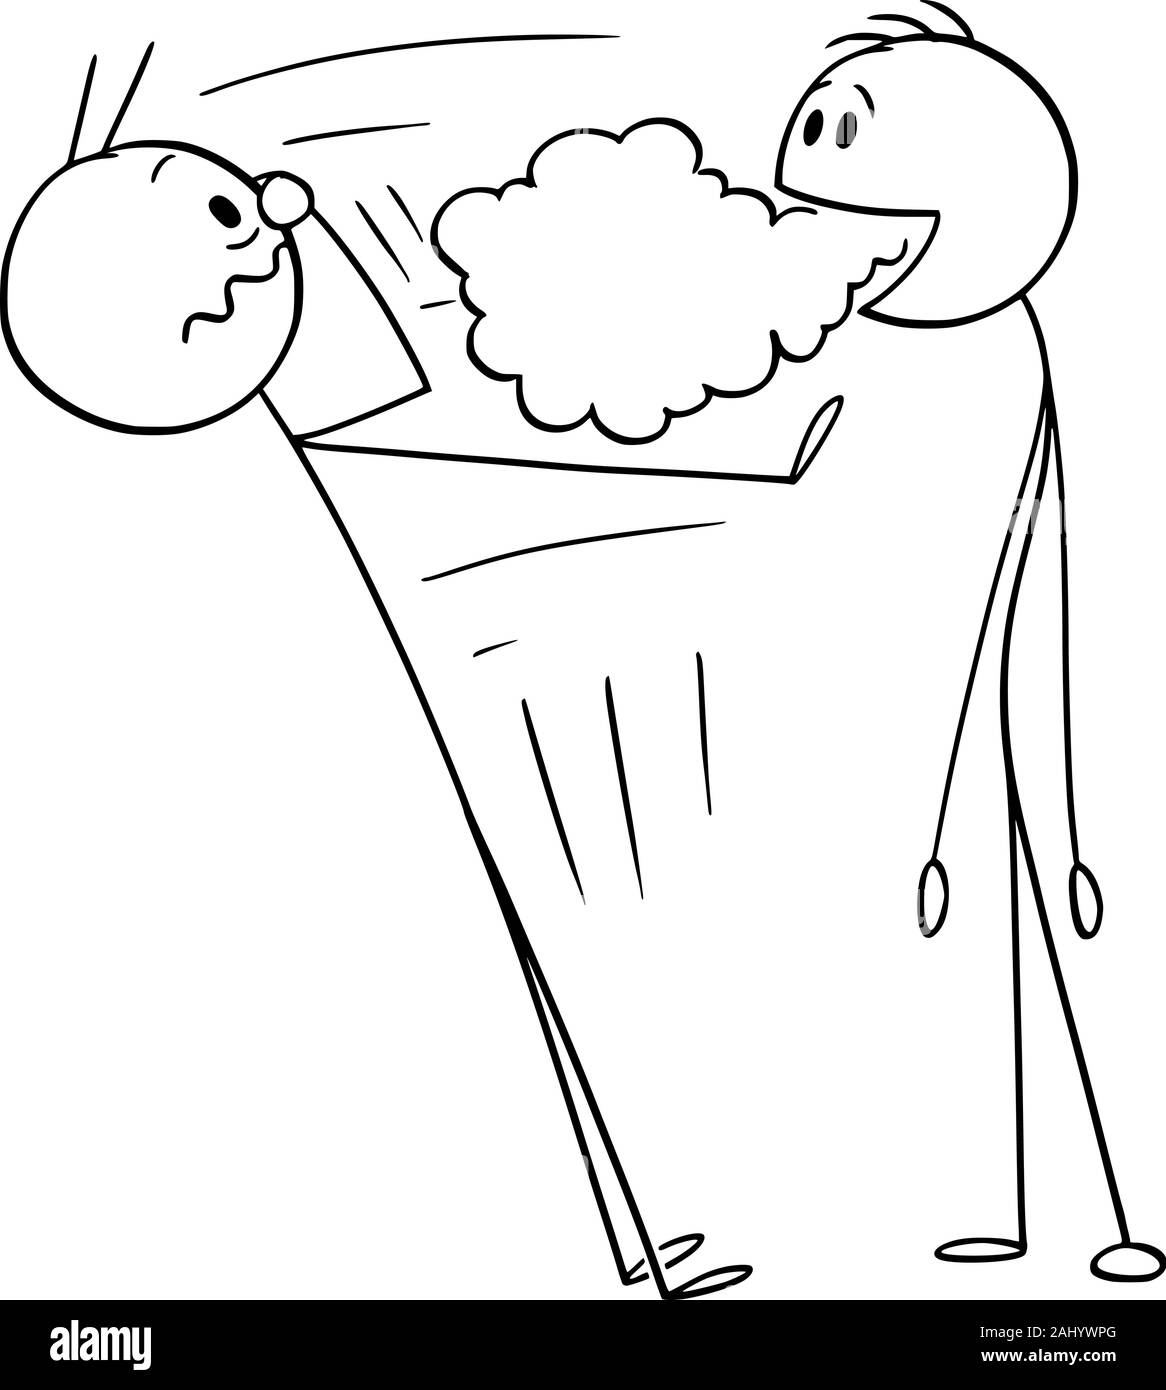 Vector cartoon stick figura disegno illustrazione concettuale dell'uomo con l'alito cattivo, cattivo odore è proveniente dalla sua bocca. Illustrazione Vettoriale